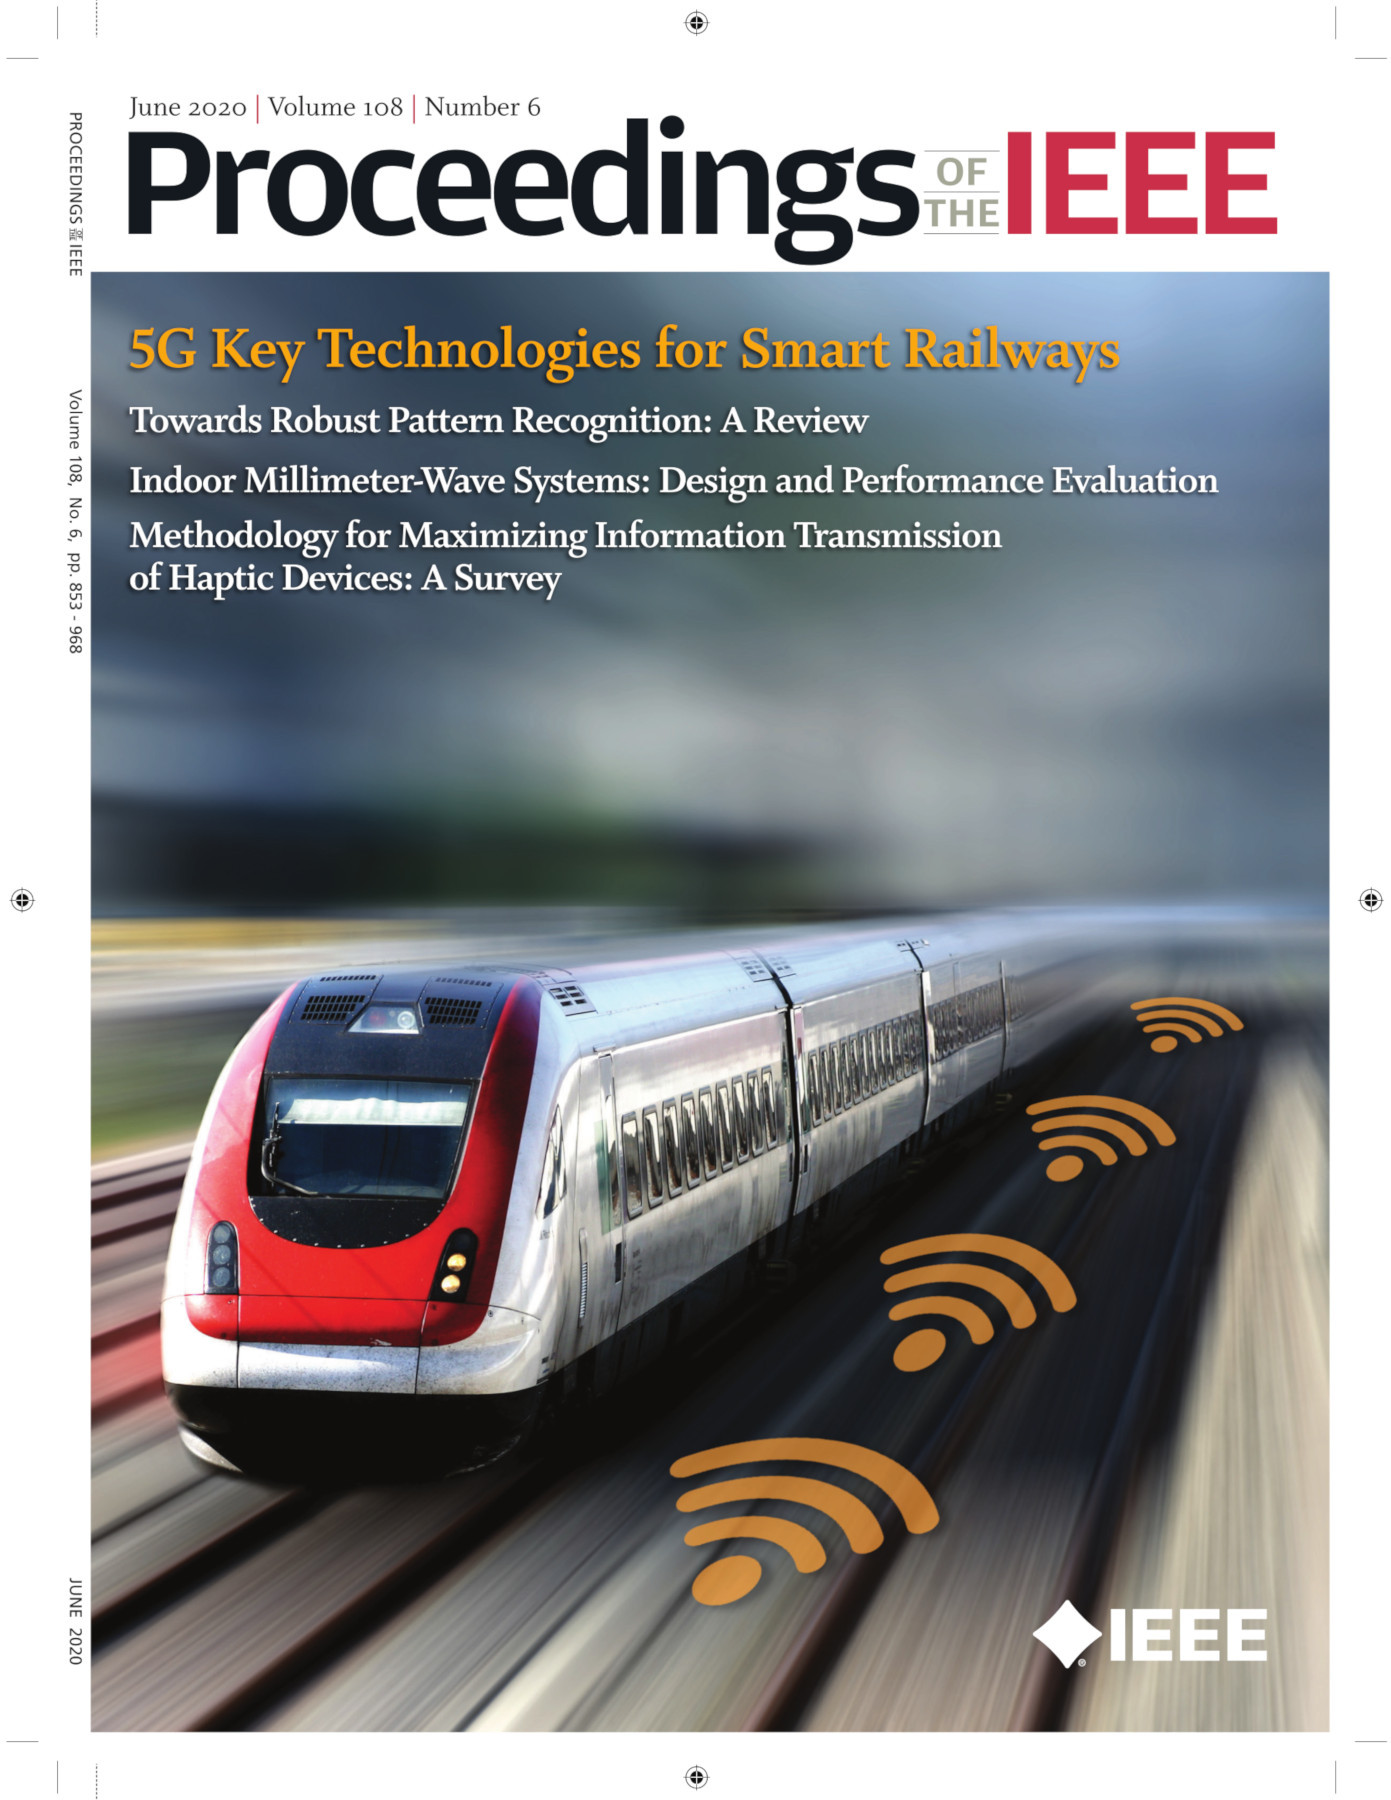 Proceedings of the IEEE June 2020 Vol. 108 No. 6